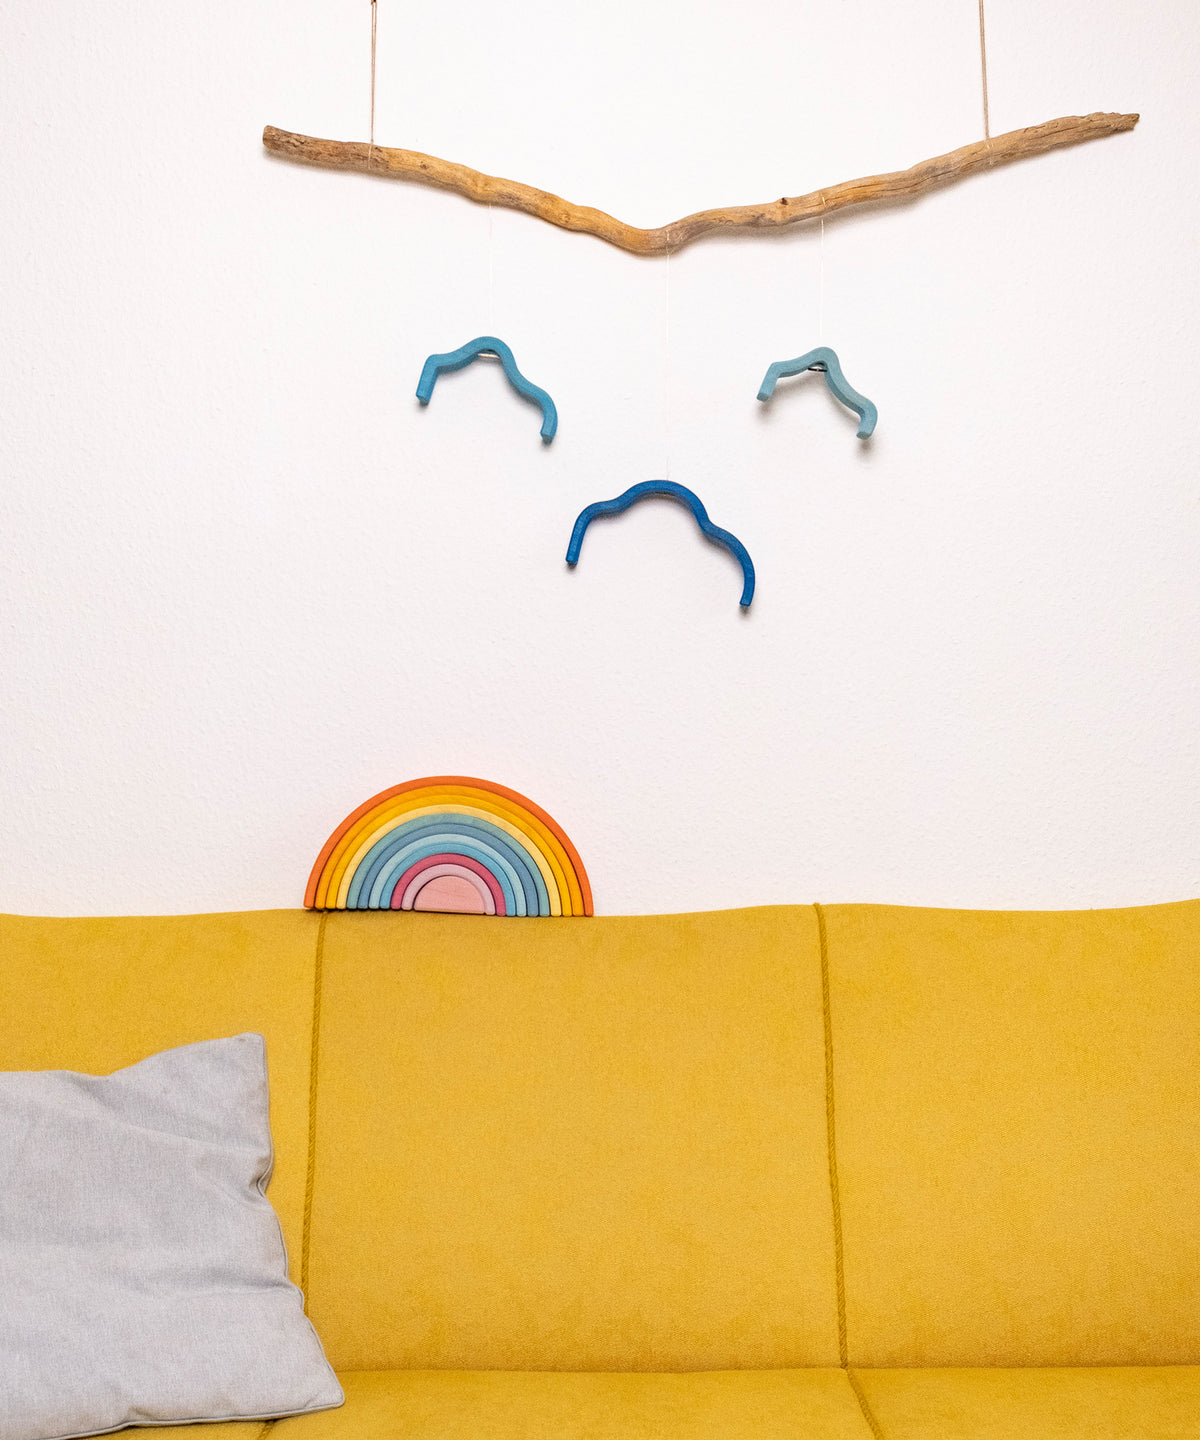 Regenbogen und Wolke auf gelbem Sofa.